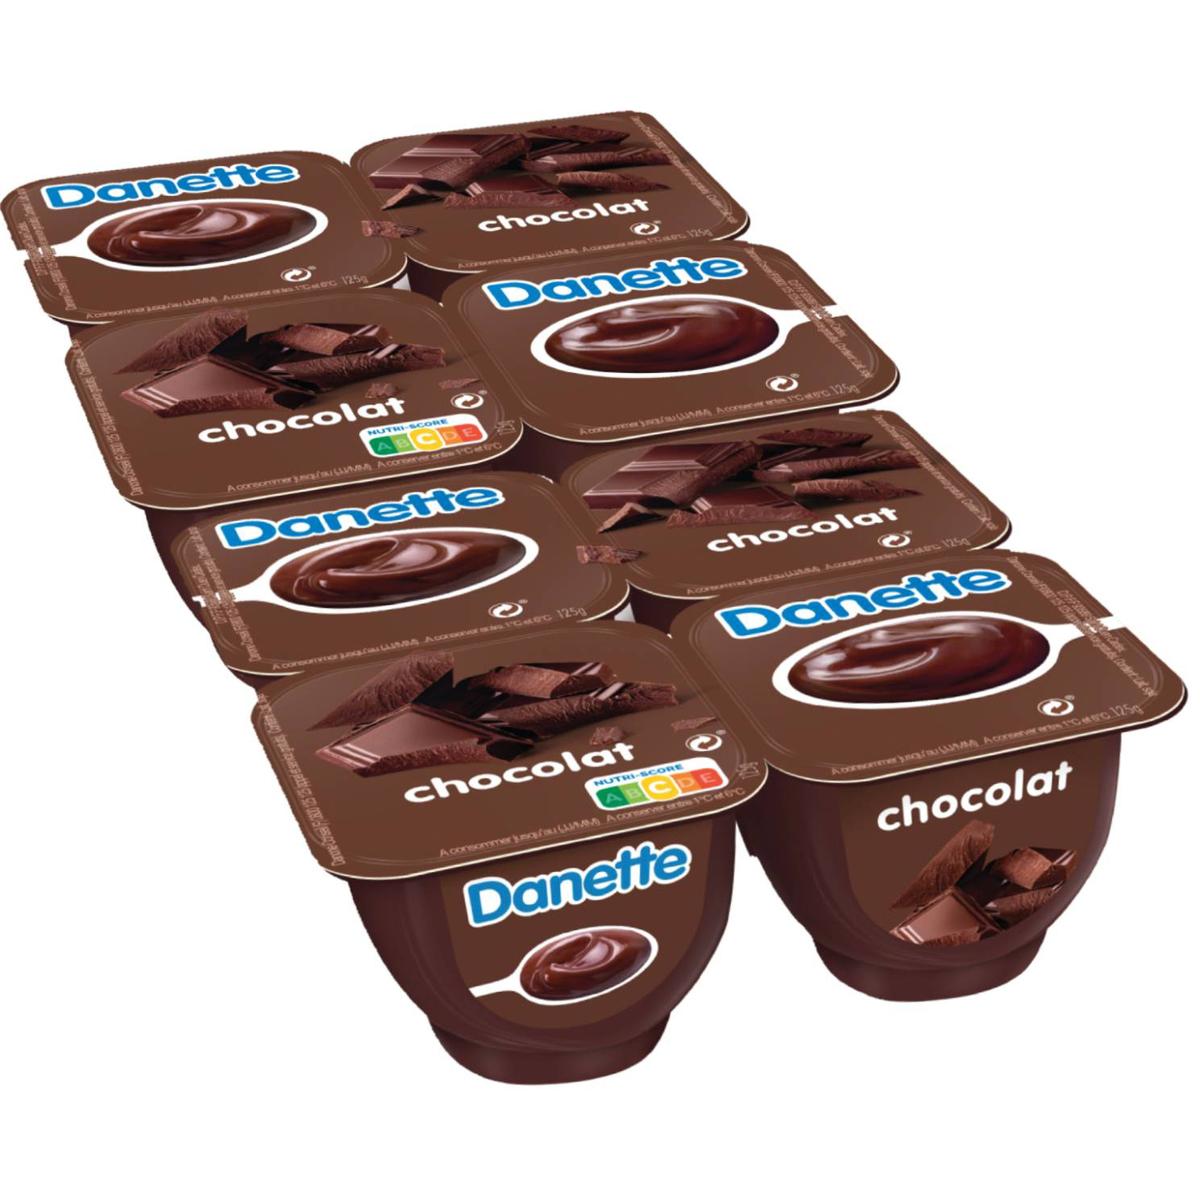 Achat / Vente Promotion Danette Chocolat, Lot de 2 paquets de 4x125g